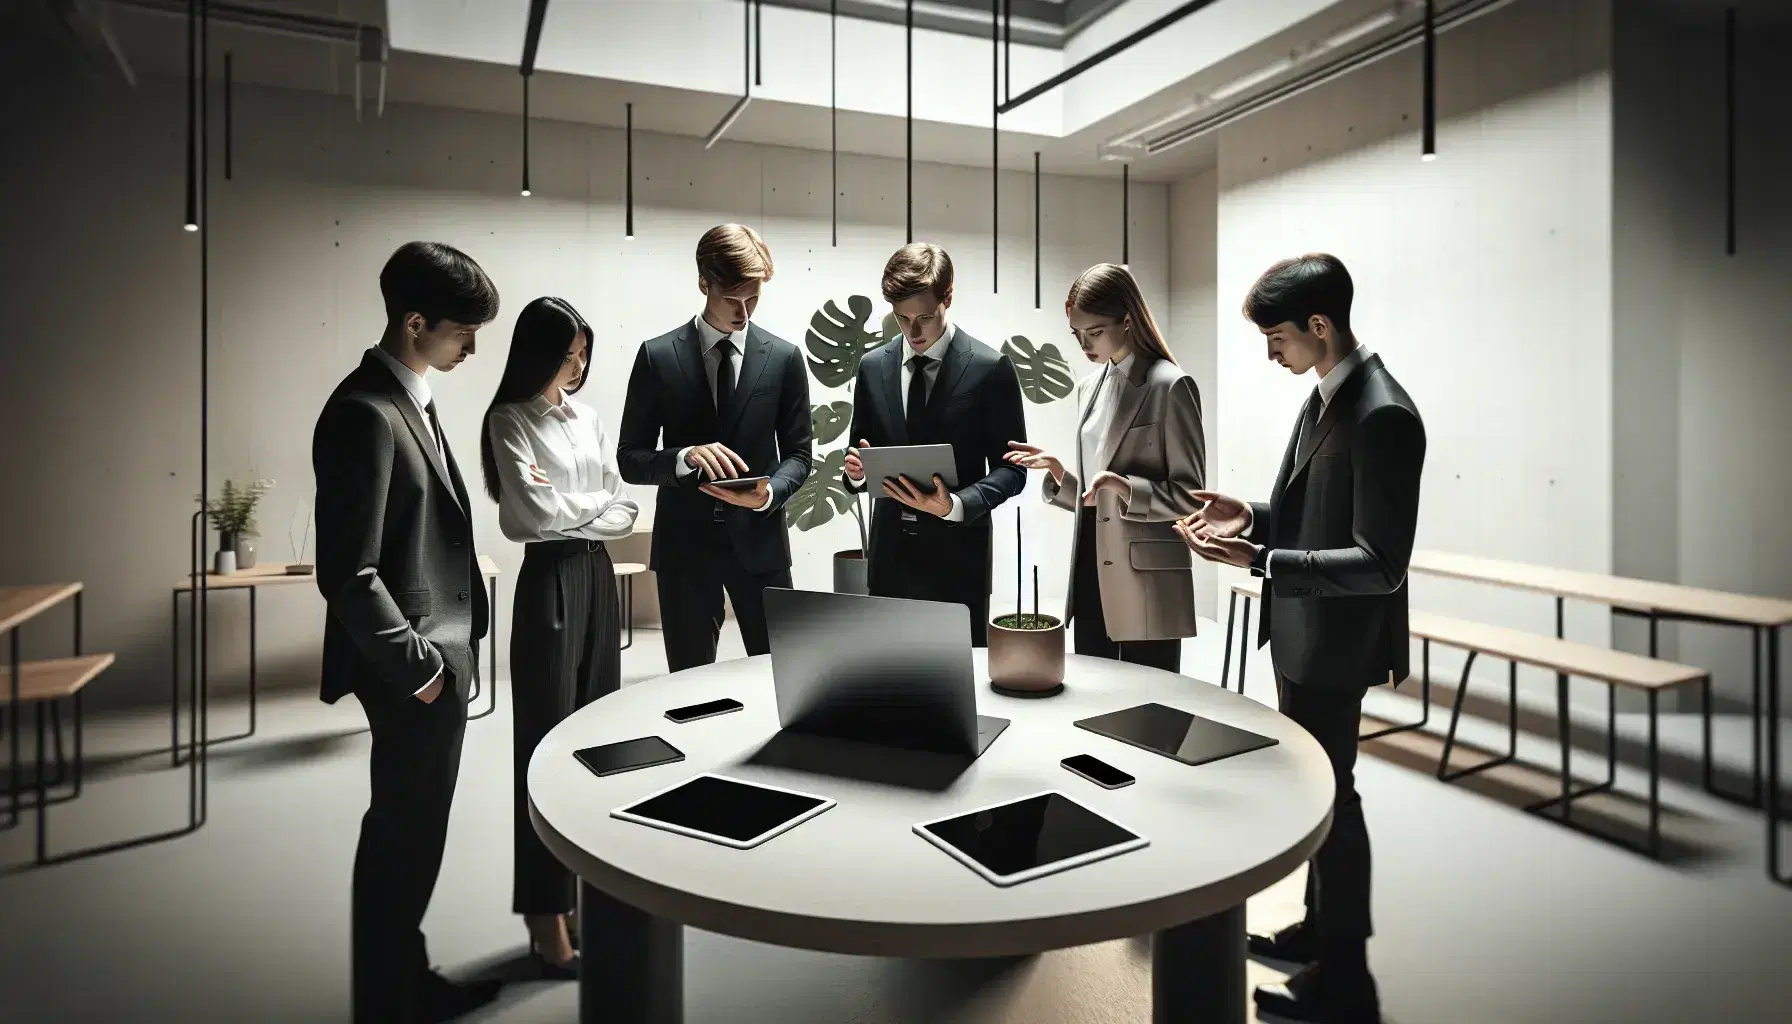 Grupo de cinco profesionales en reunión de trabajo alrededor de una mesa redonda con dispositivos electrónicos en una oficina iluminada y decorada con planta verde.